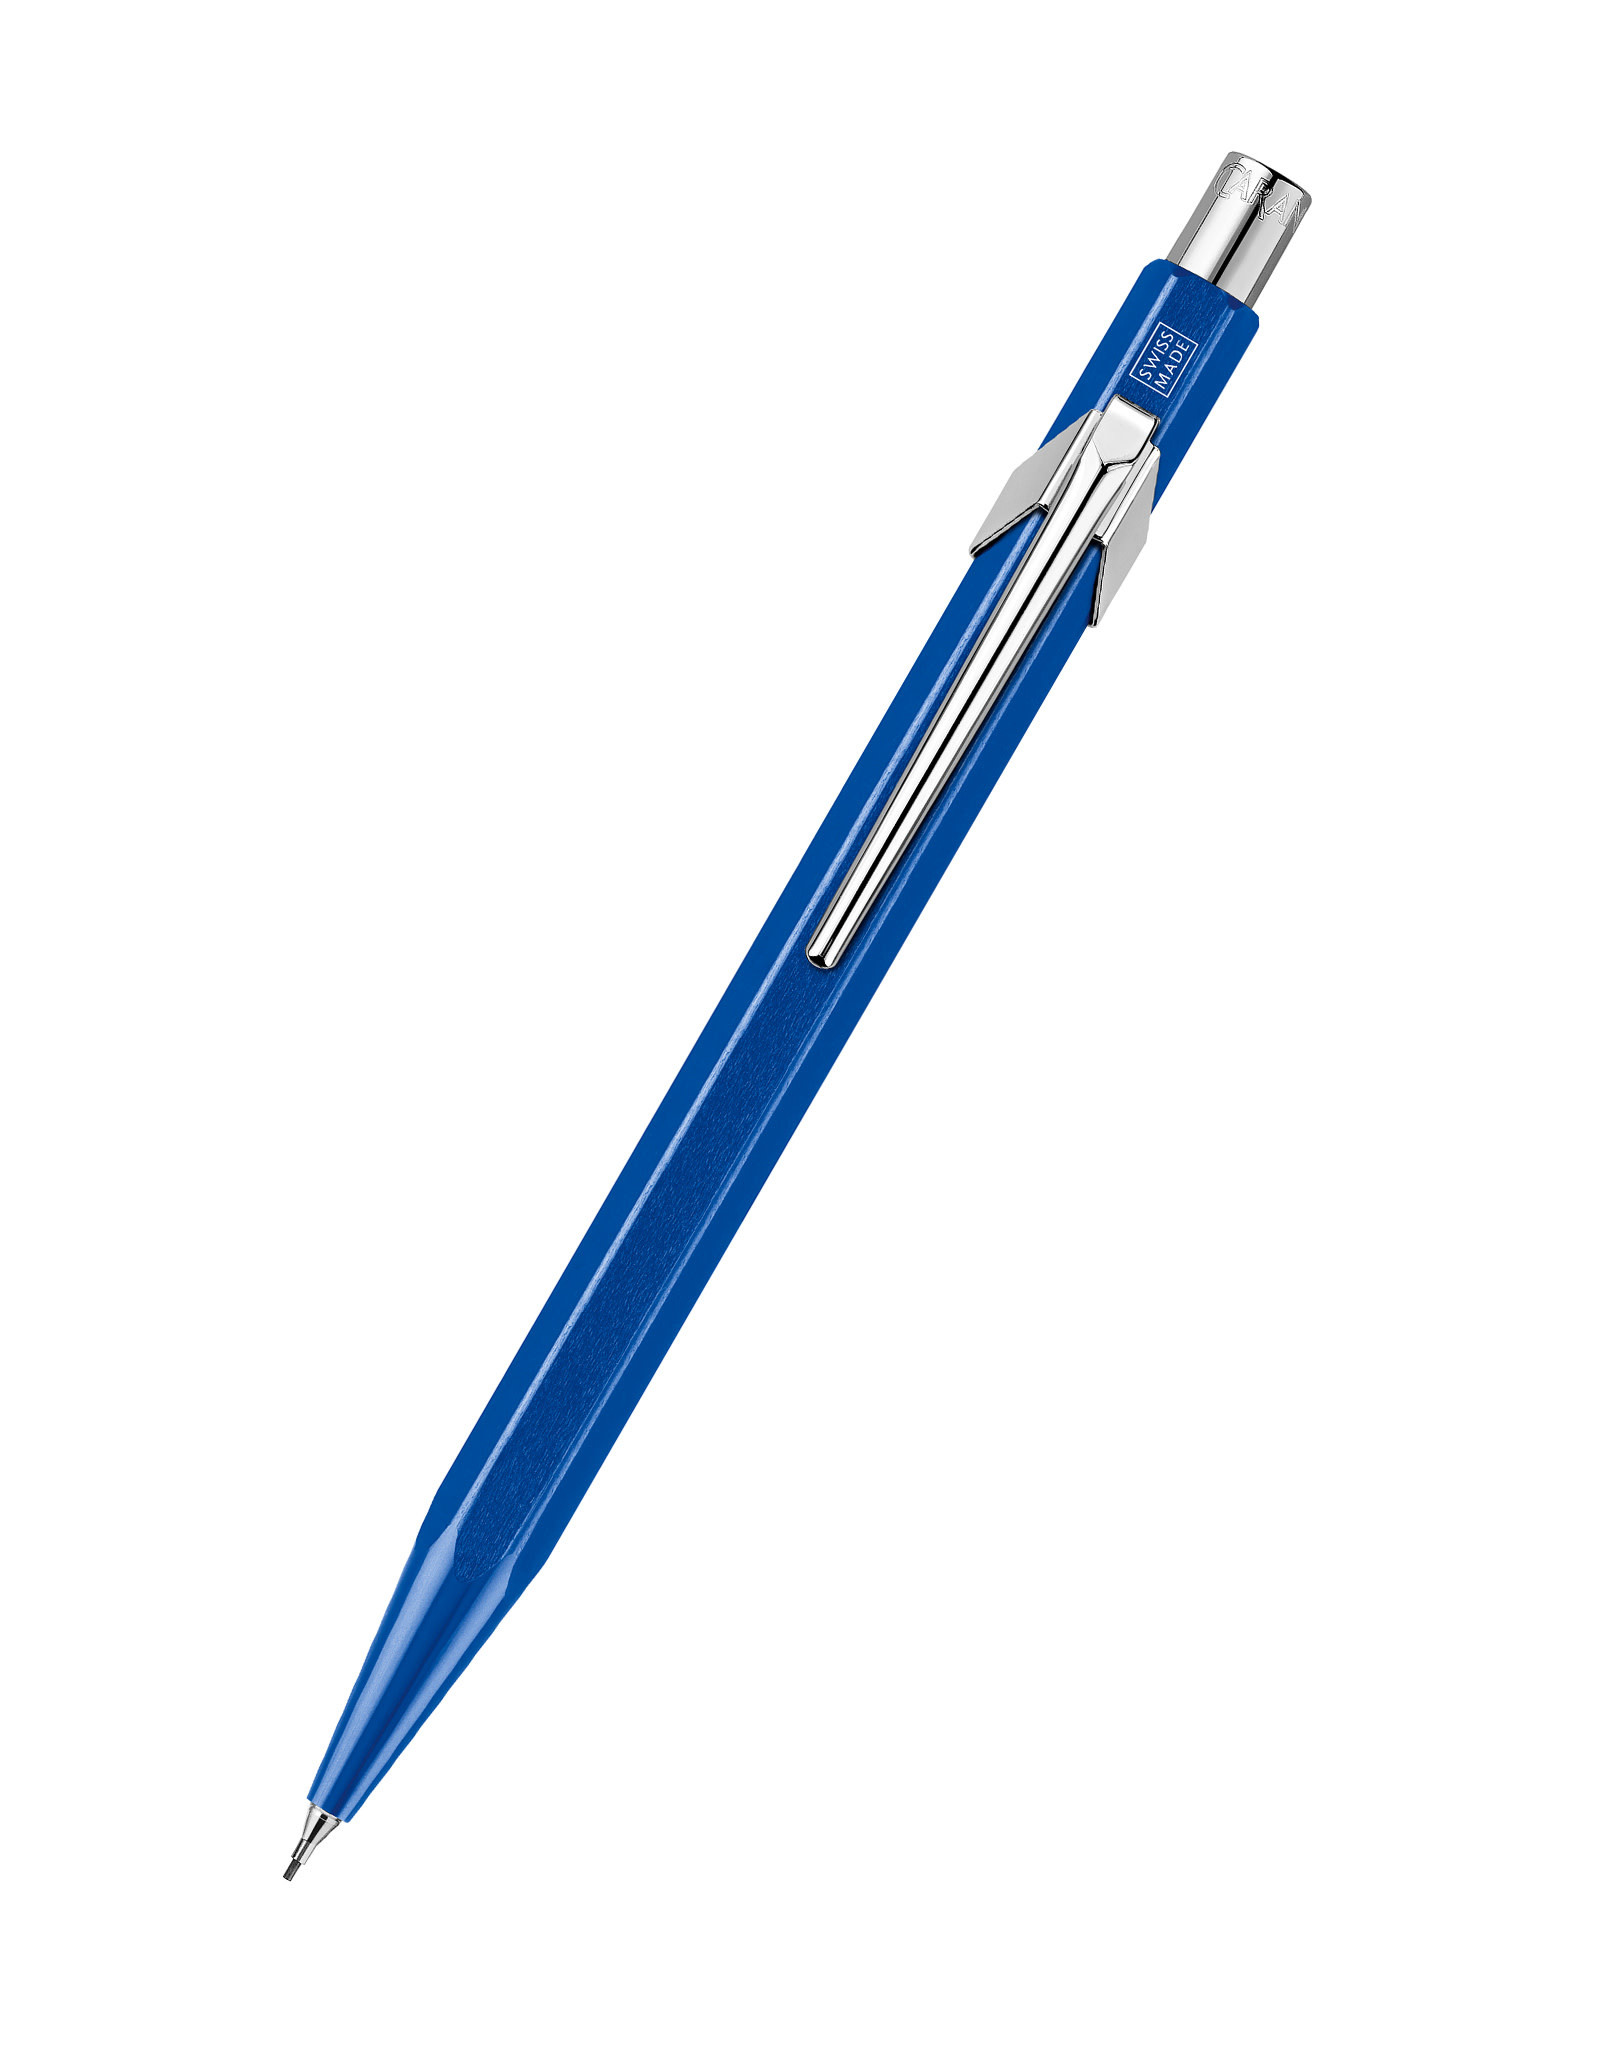 Caran d'Ache Caran D’Ache 844 Mechanical Pencil, Sapphire Blue